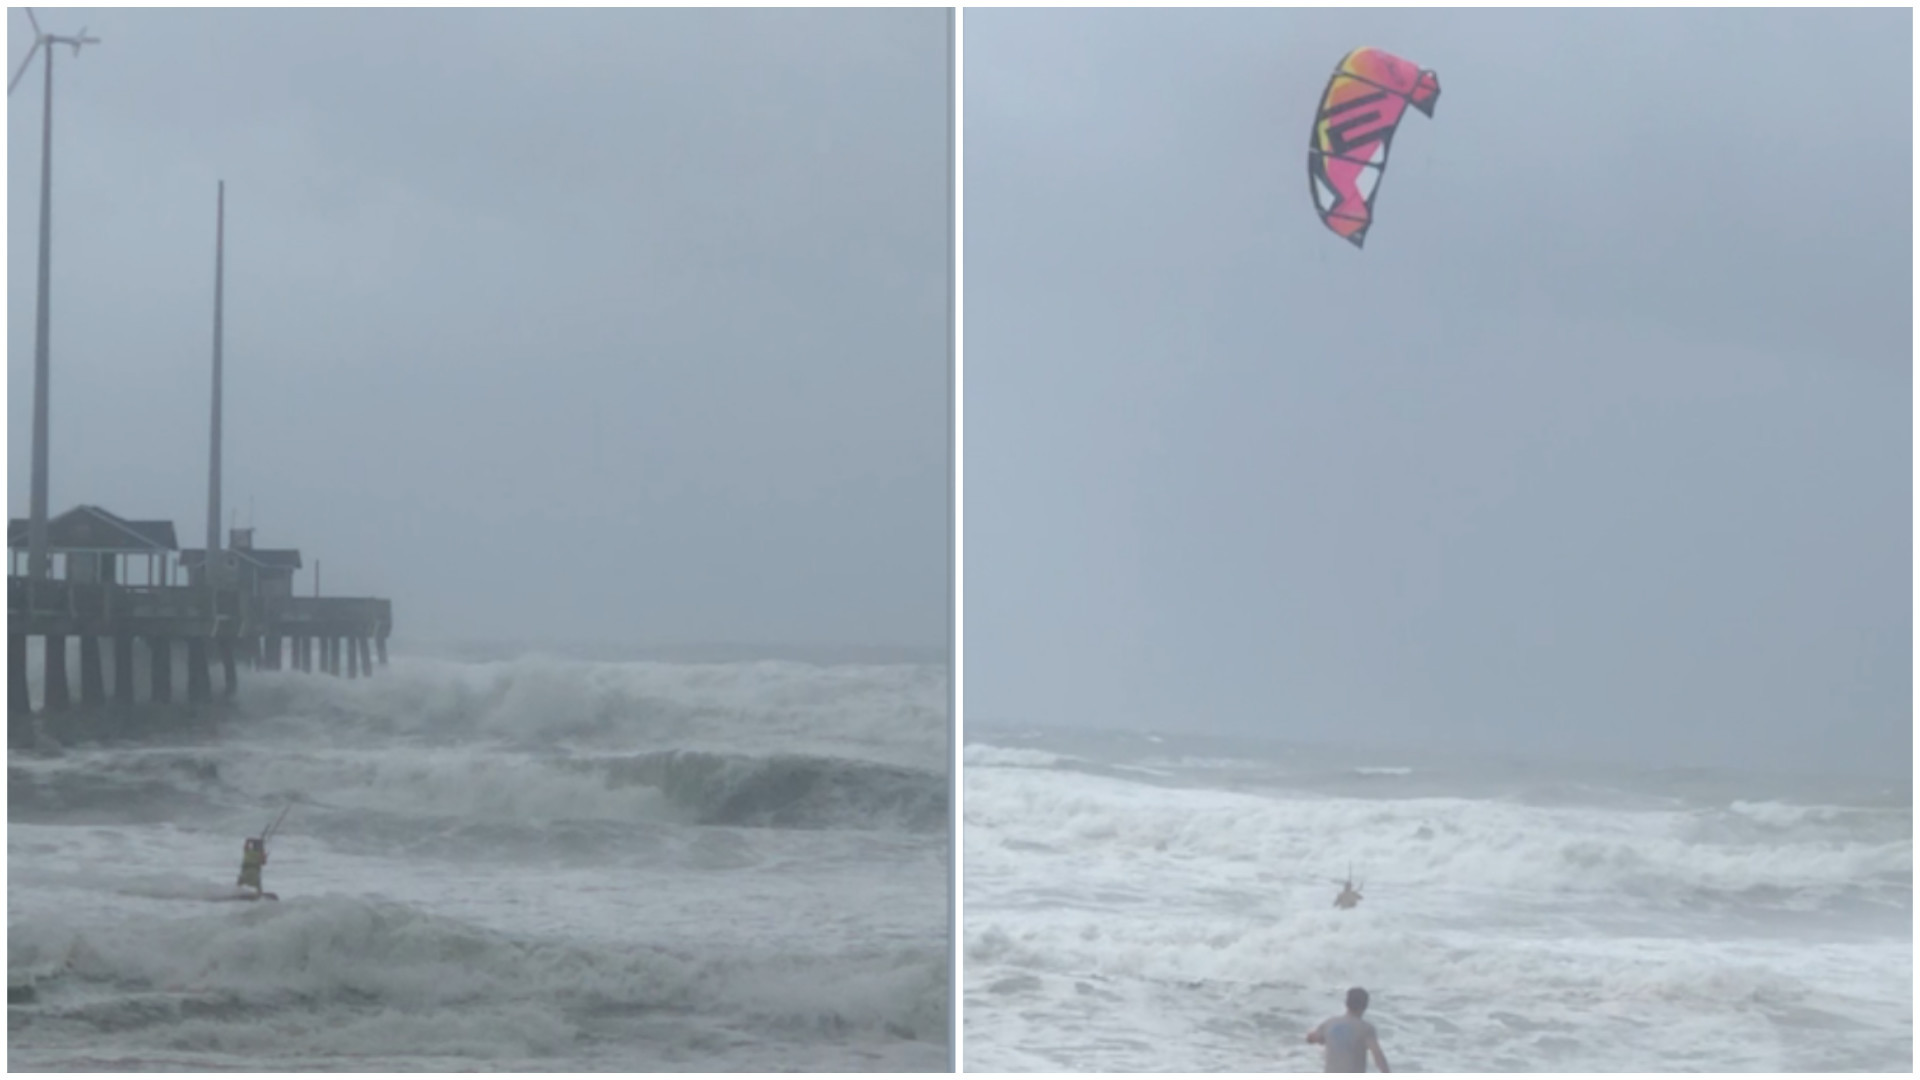 Homem usa vento de furacão para praticar kitesurf nos EUA